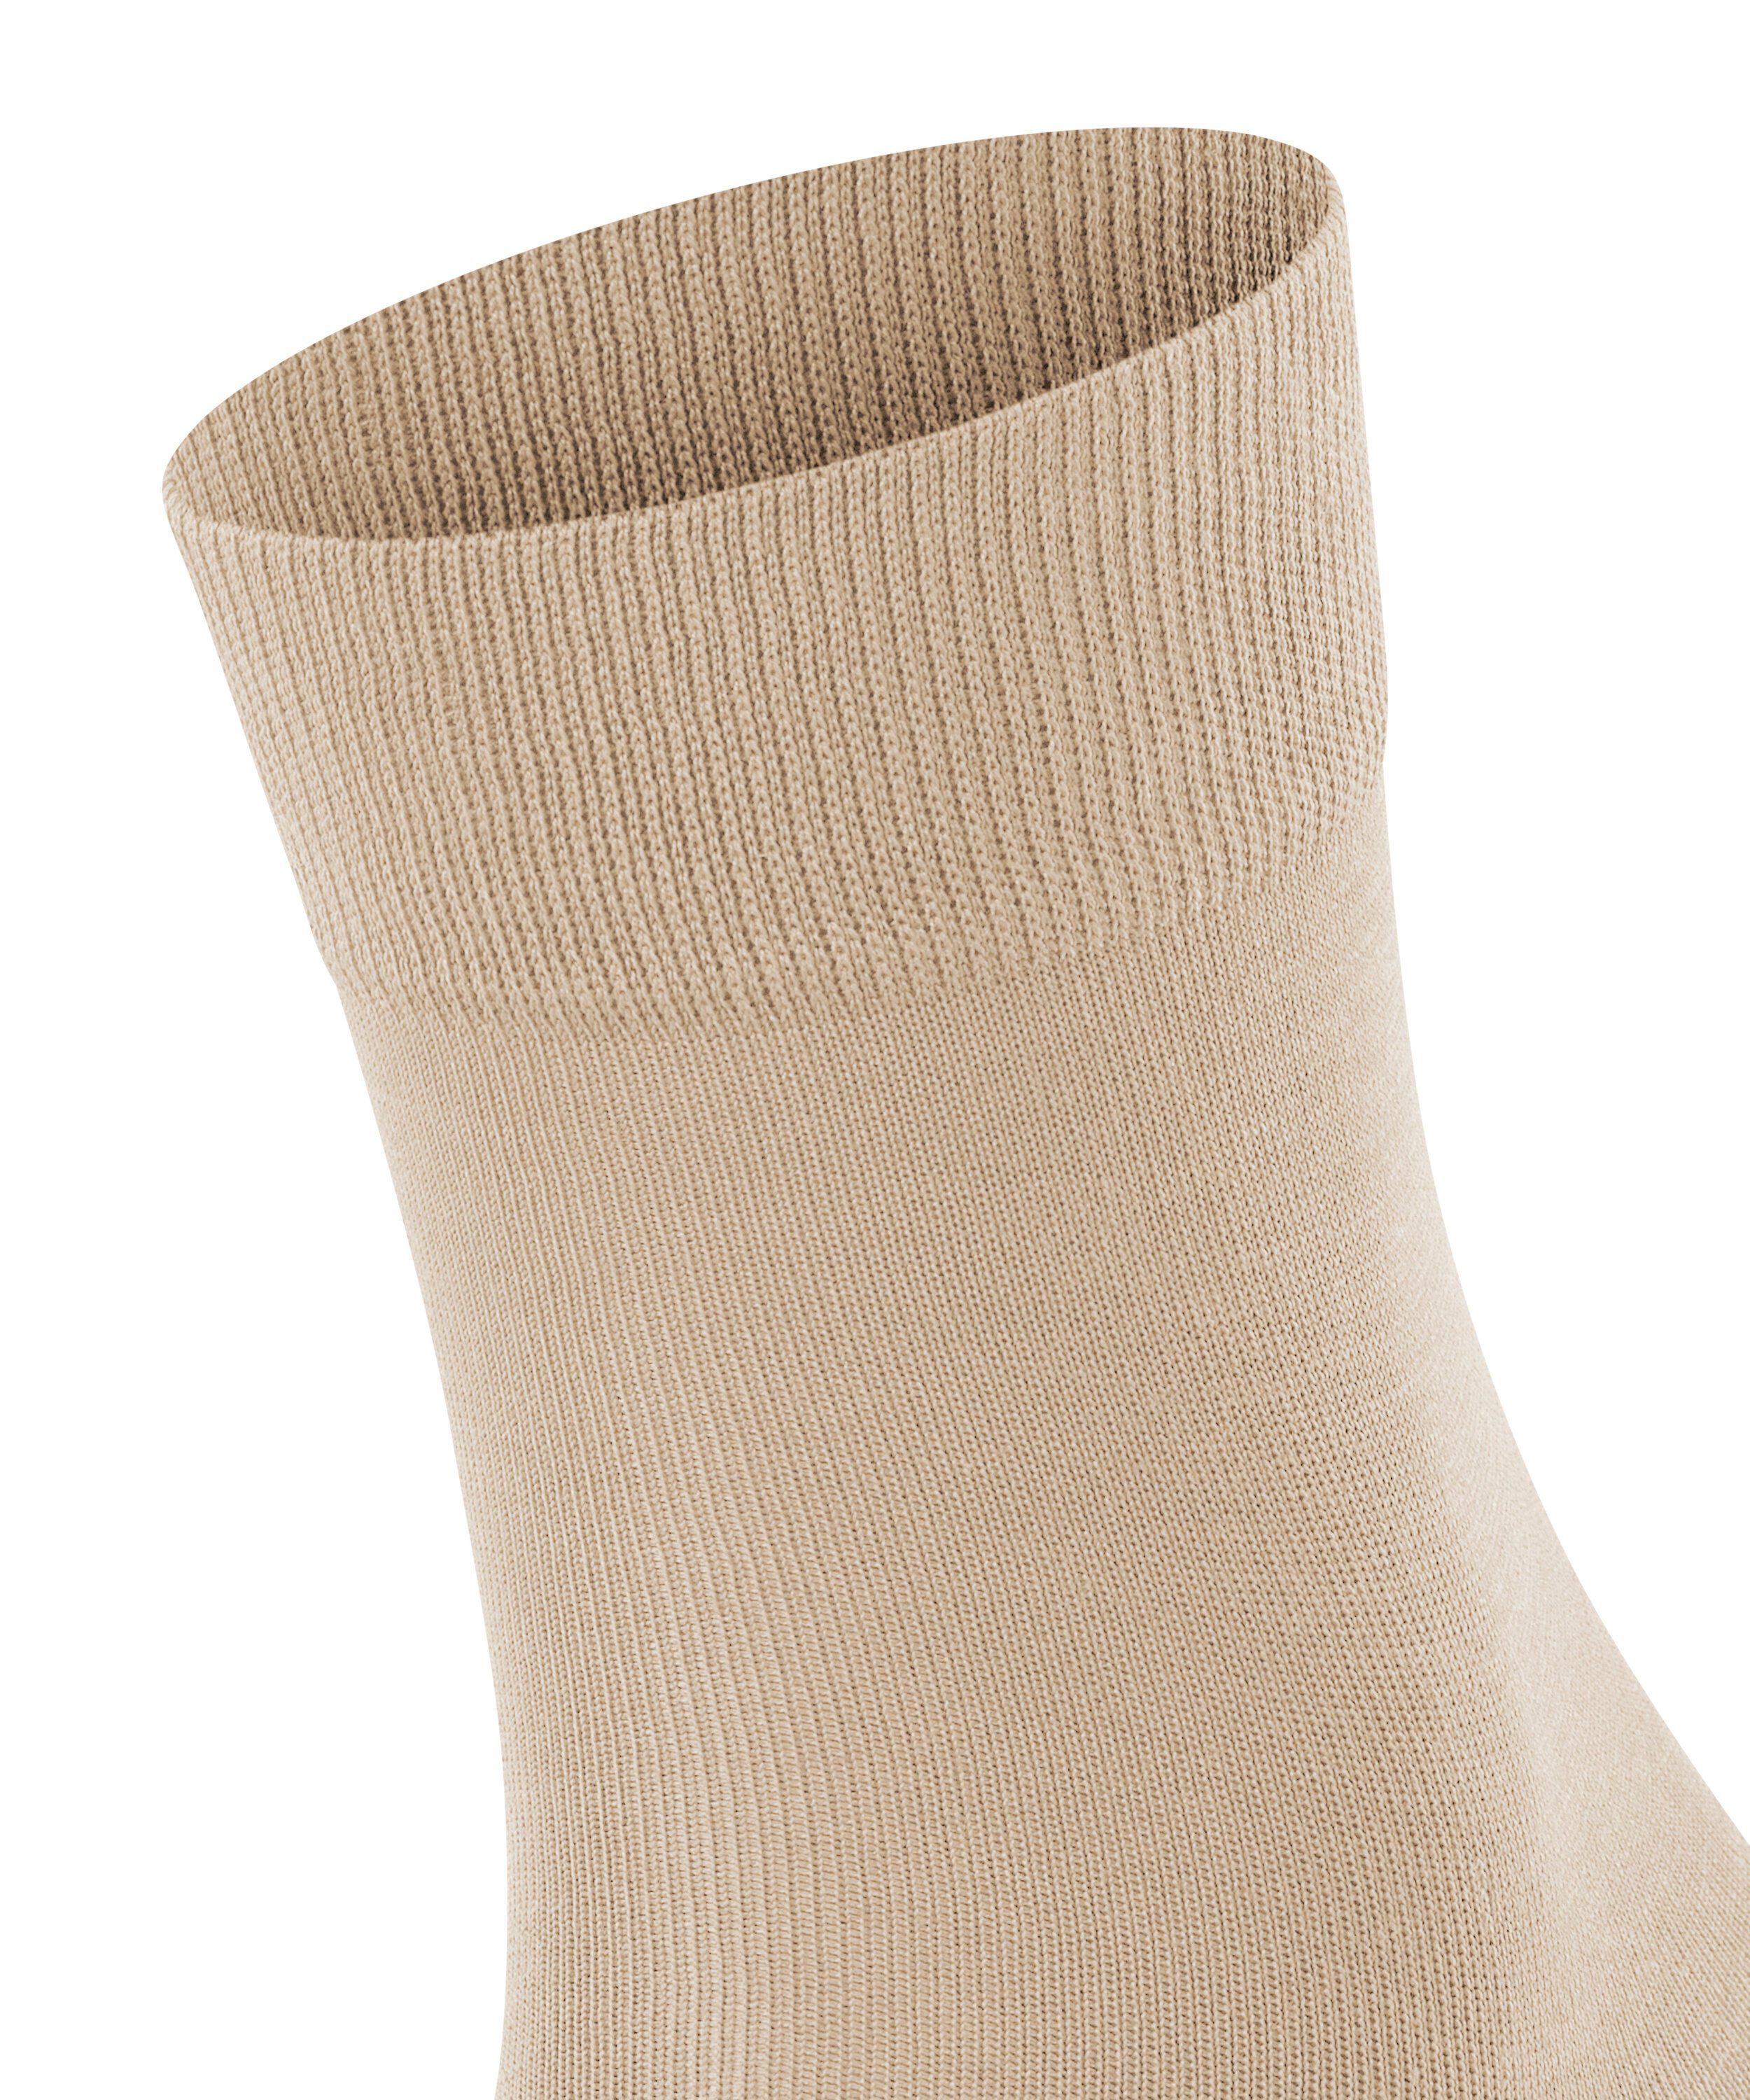 (4097) (1-Paar) FALKE Socken Tiago silk